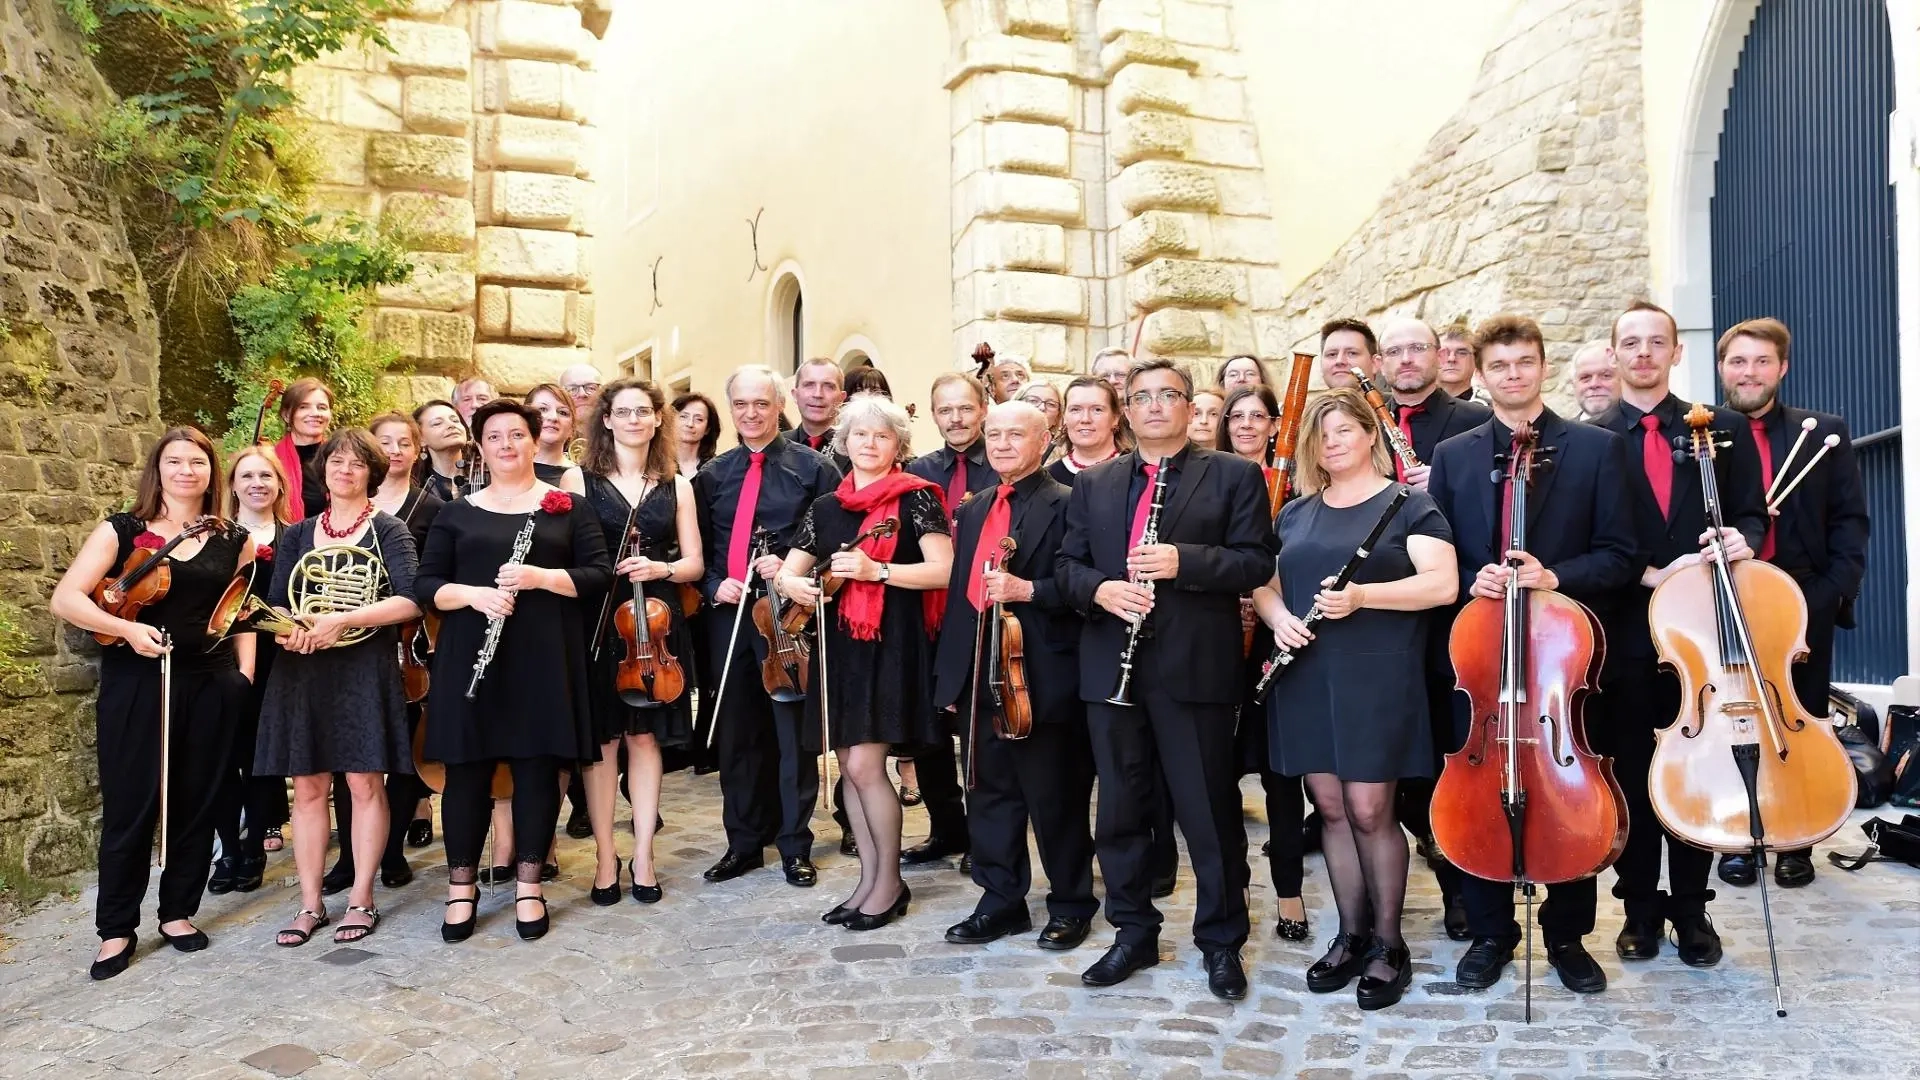 Ein Teil des Orchesters estro armonico befindet sich am Eingang eines Schlosses in Luxemburg.